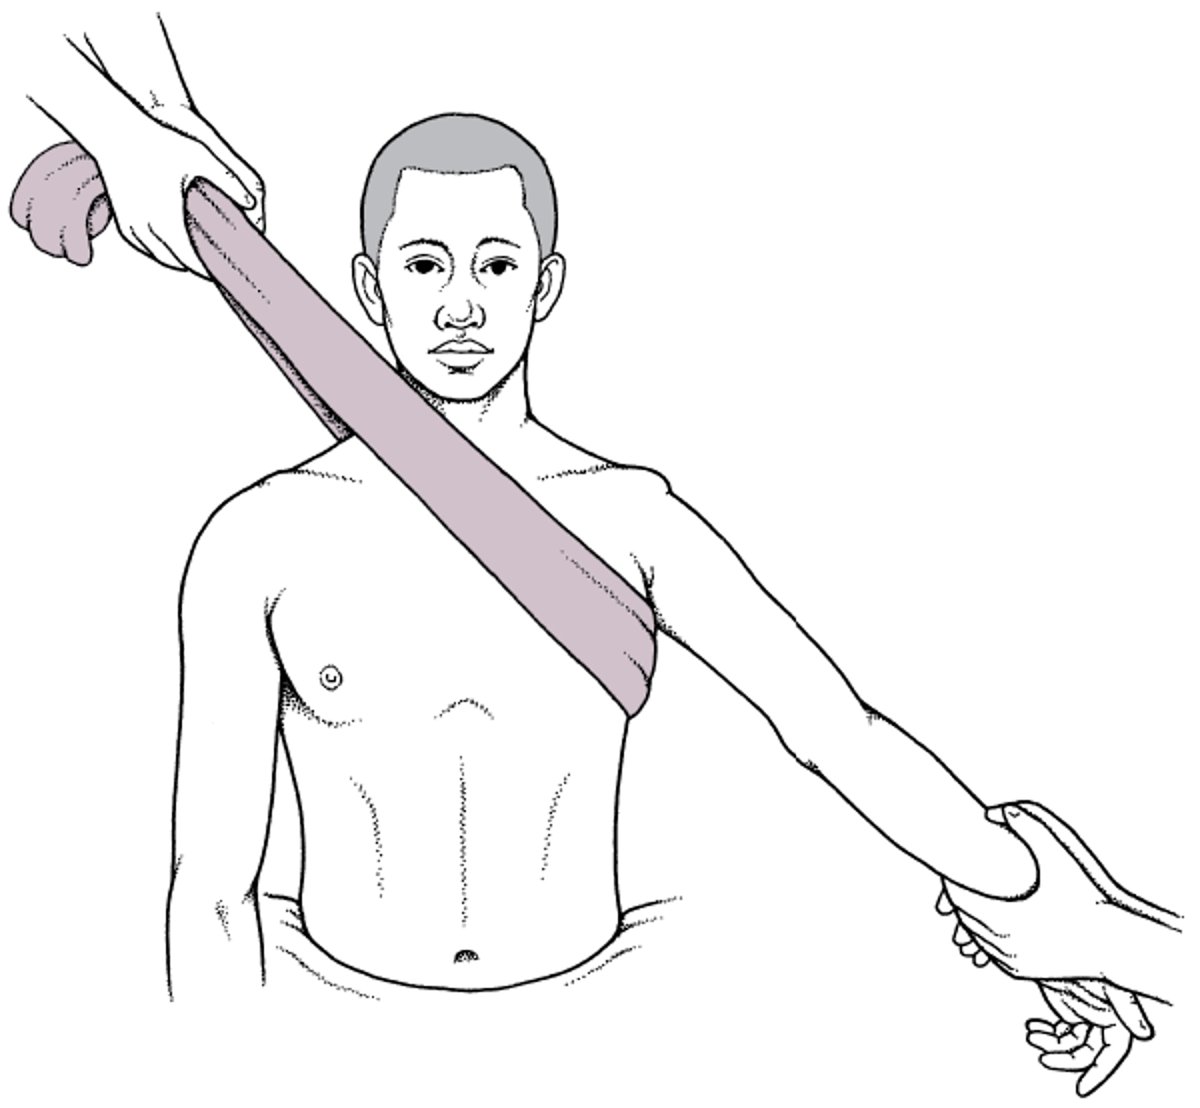 Técnica de tração-contratração para reduzir luxações anteriores do ombro